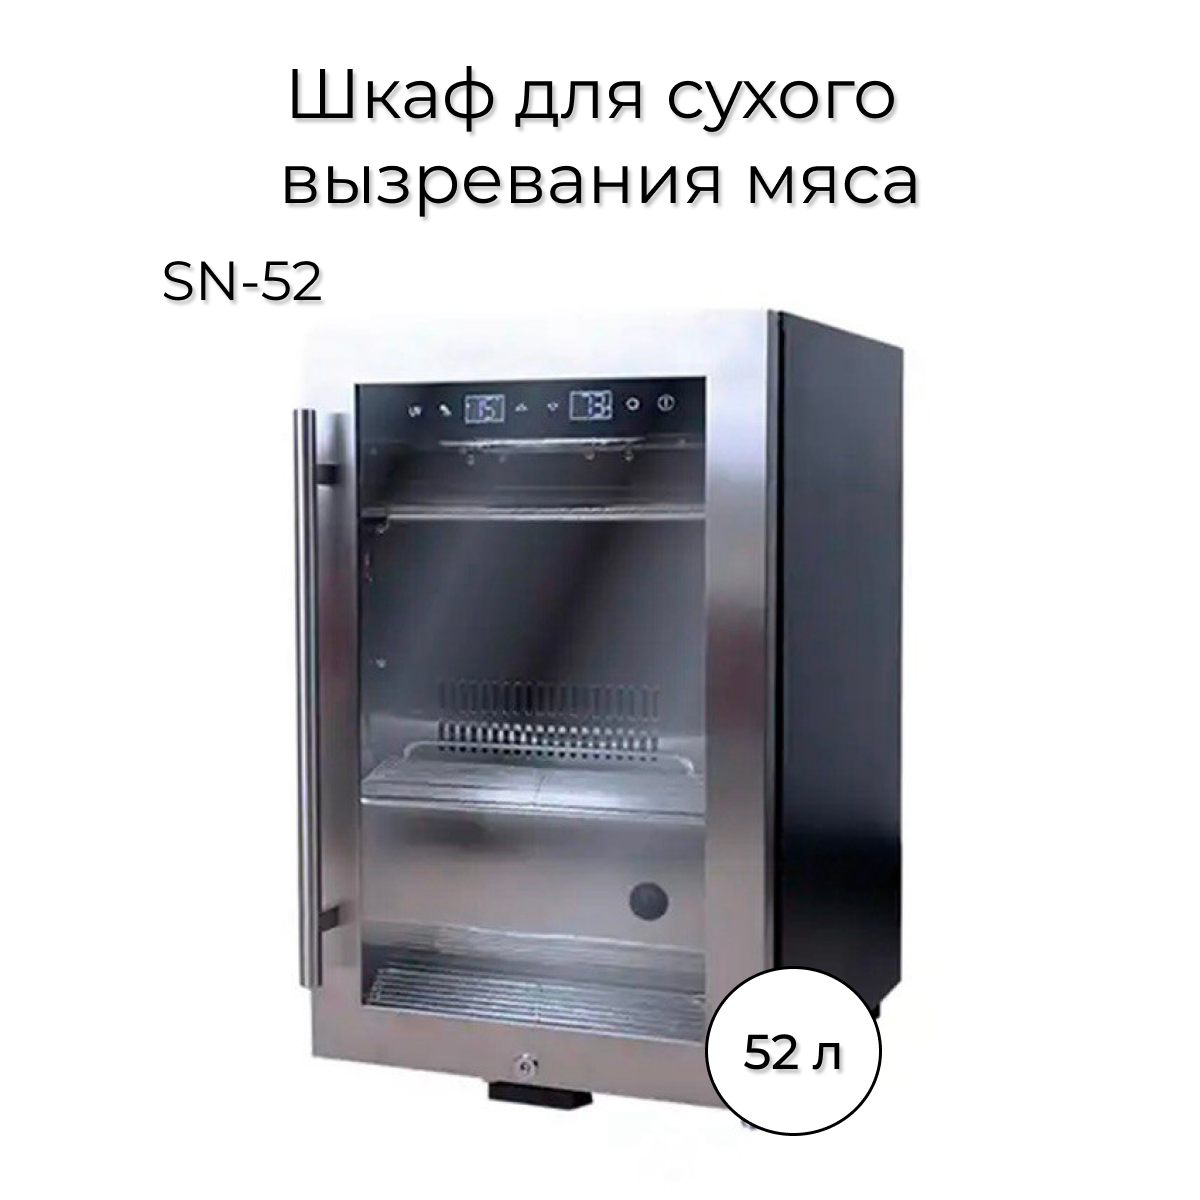 Холодильник Wistora SN-52 серебристый 1 комплект полезных многоразовых широкоприменительных безопасных ручных машин для мясных фарш для домашних колбасных шприцев